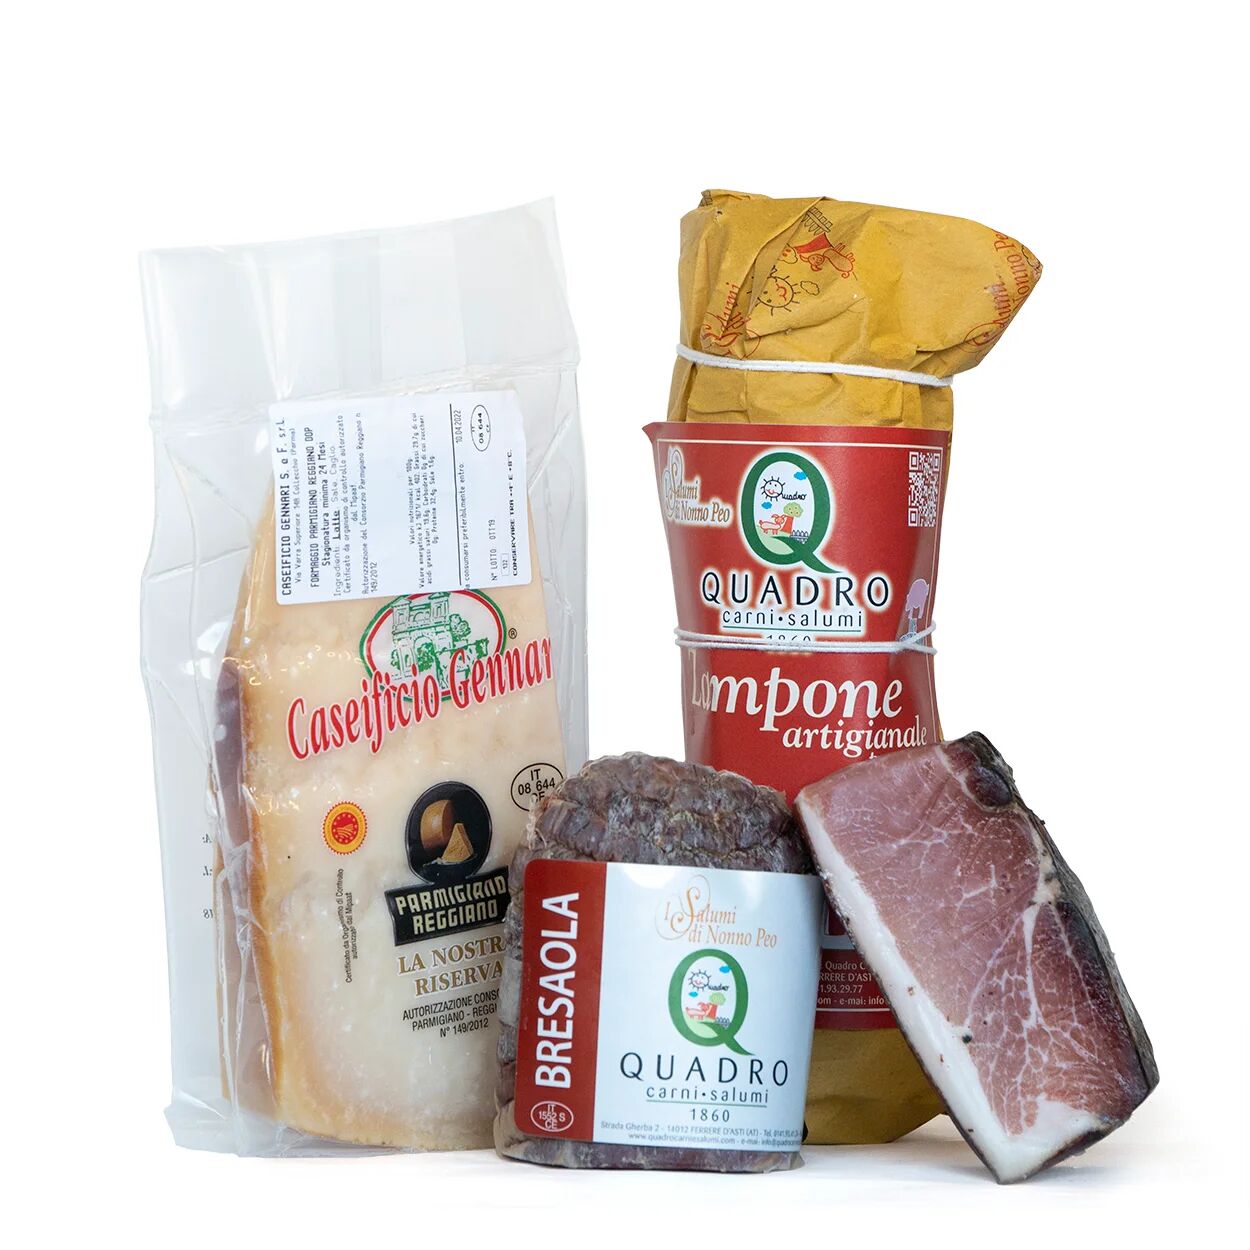 Quadro Carni e Salumi Box 4 prodotti: Zampone Artigianale, Bresaola, Speck, Parmigiano Reggiano DOP